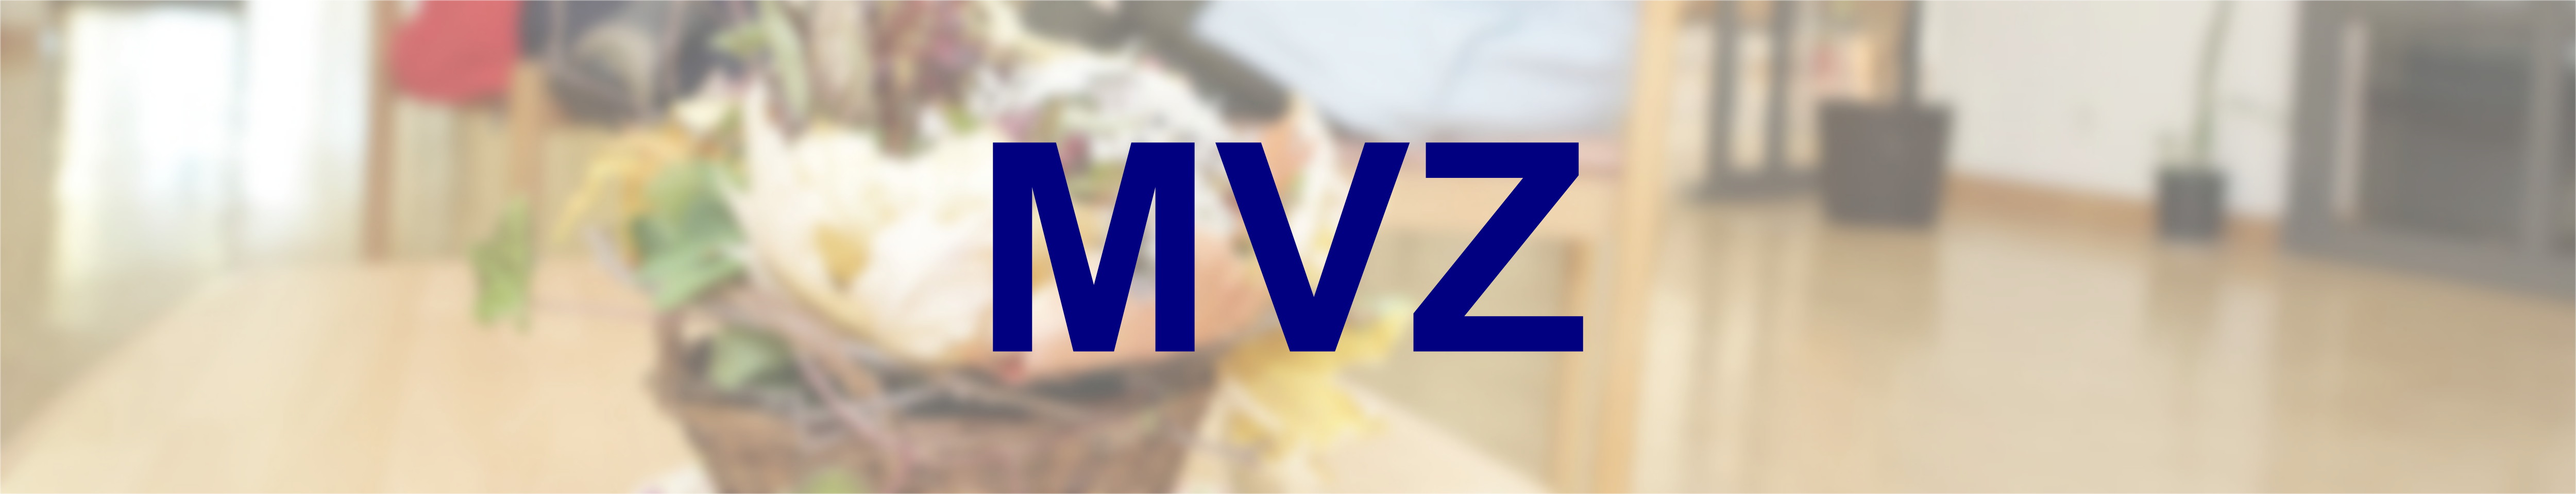 Headerbild: MVZ Medizinische Versorgungszentren Landkreis Leipzig gemeinnützige GmbH